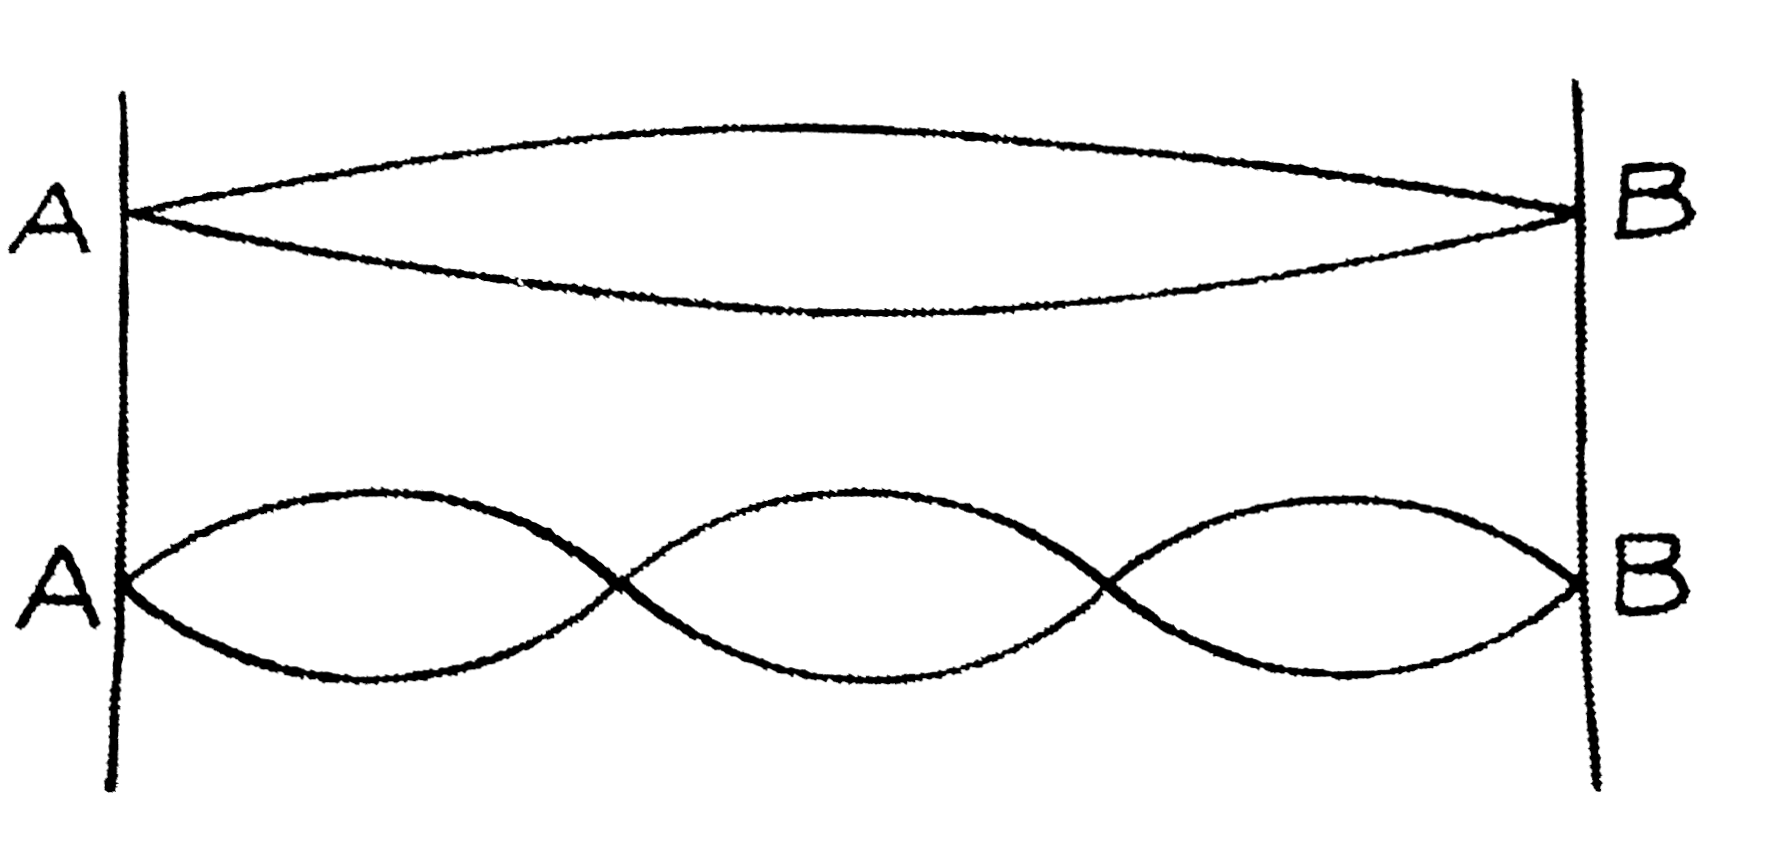 चित्र में दो स्थिर बिंदुओं A और B के बीच तनी हुई डोरी के दो प्रकार के कम्पनों को दिखाया गया है। दोनों दशाओं में आवृत्तियों का अनुपात ज्ञात कीजिए। डोरी का तनाव अपरिवर्तित रहता है।